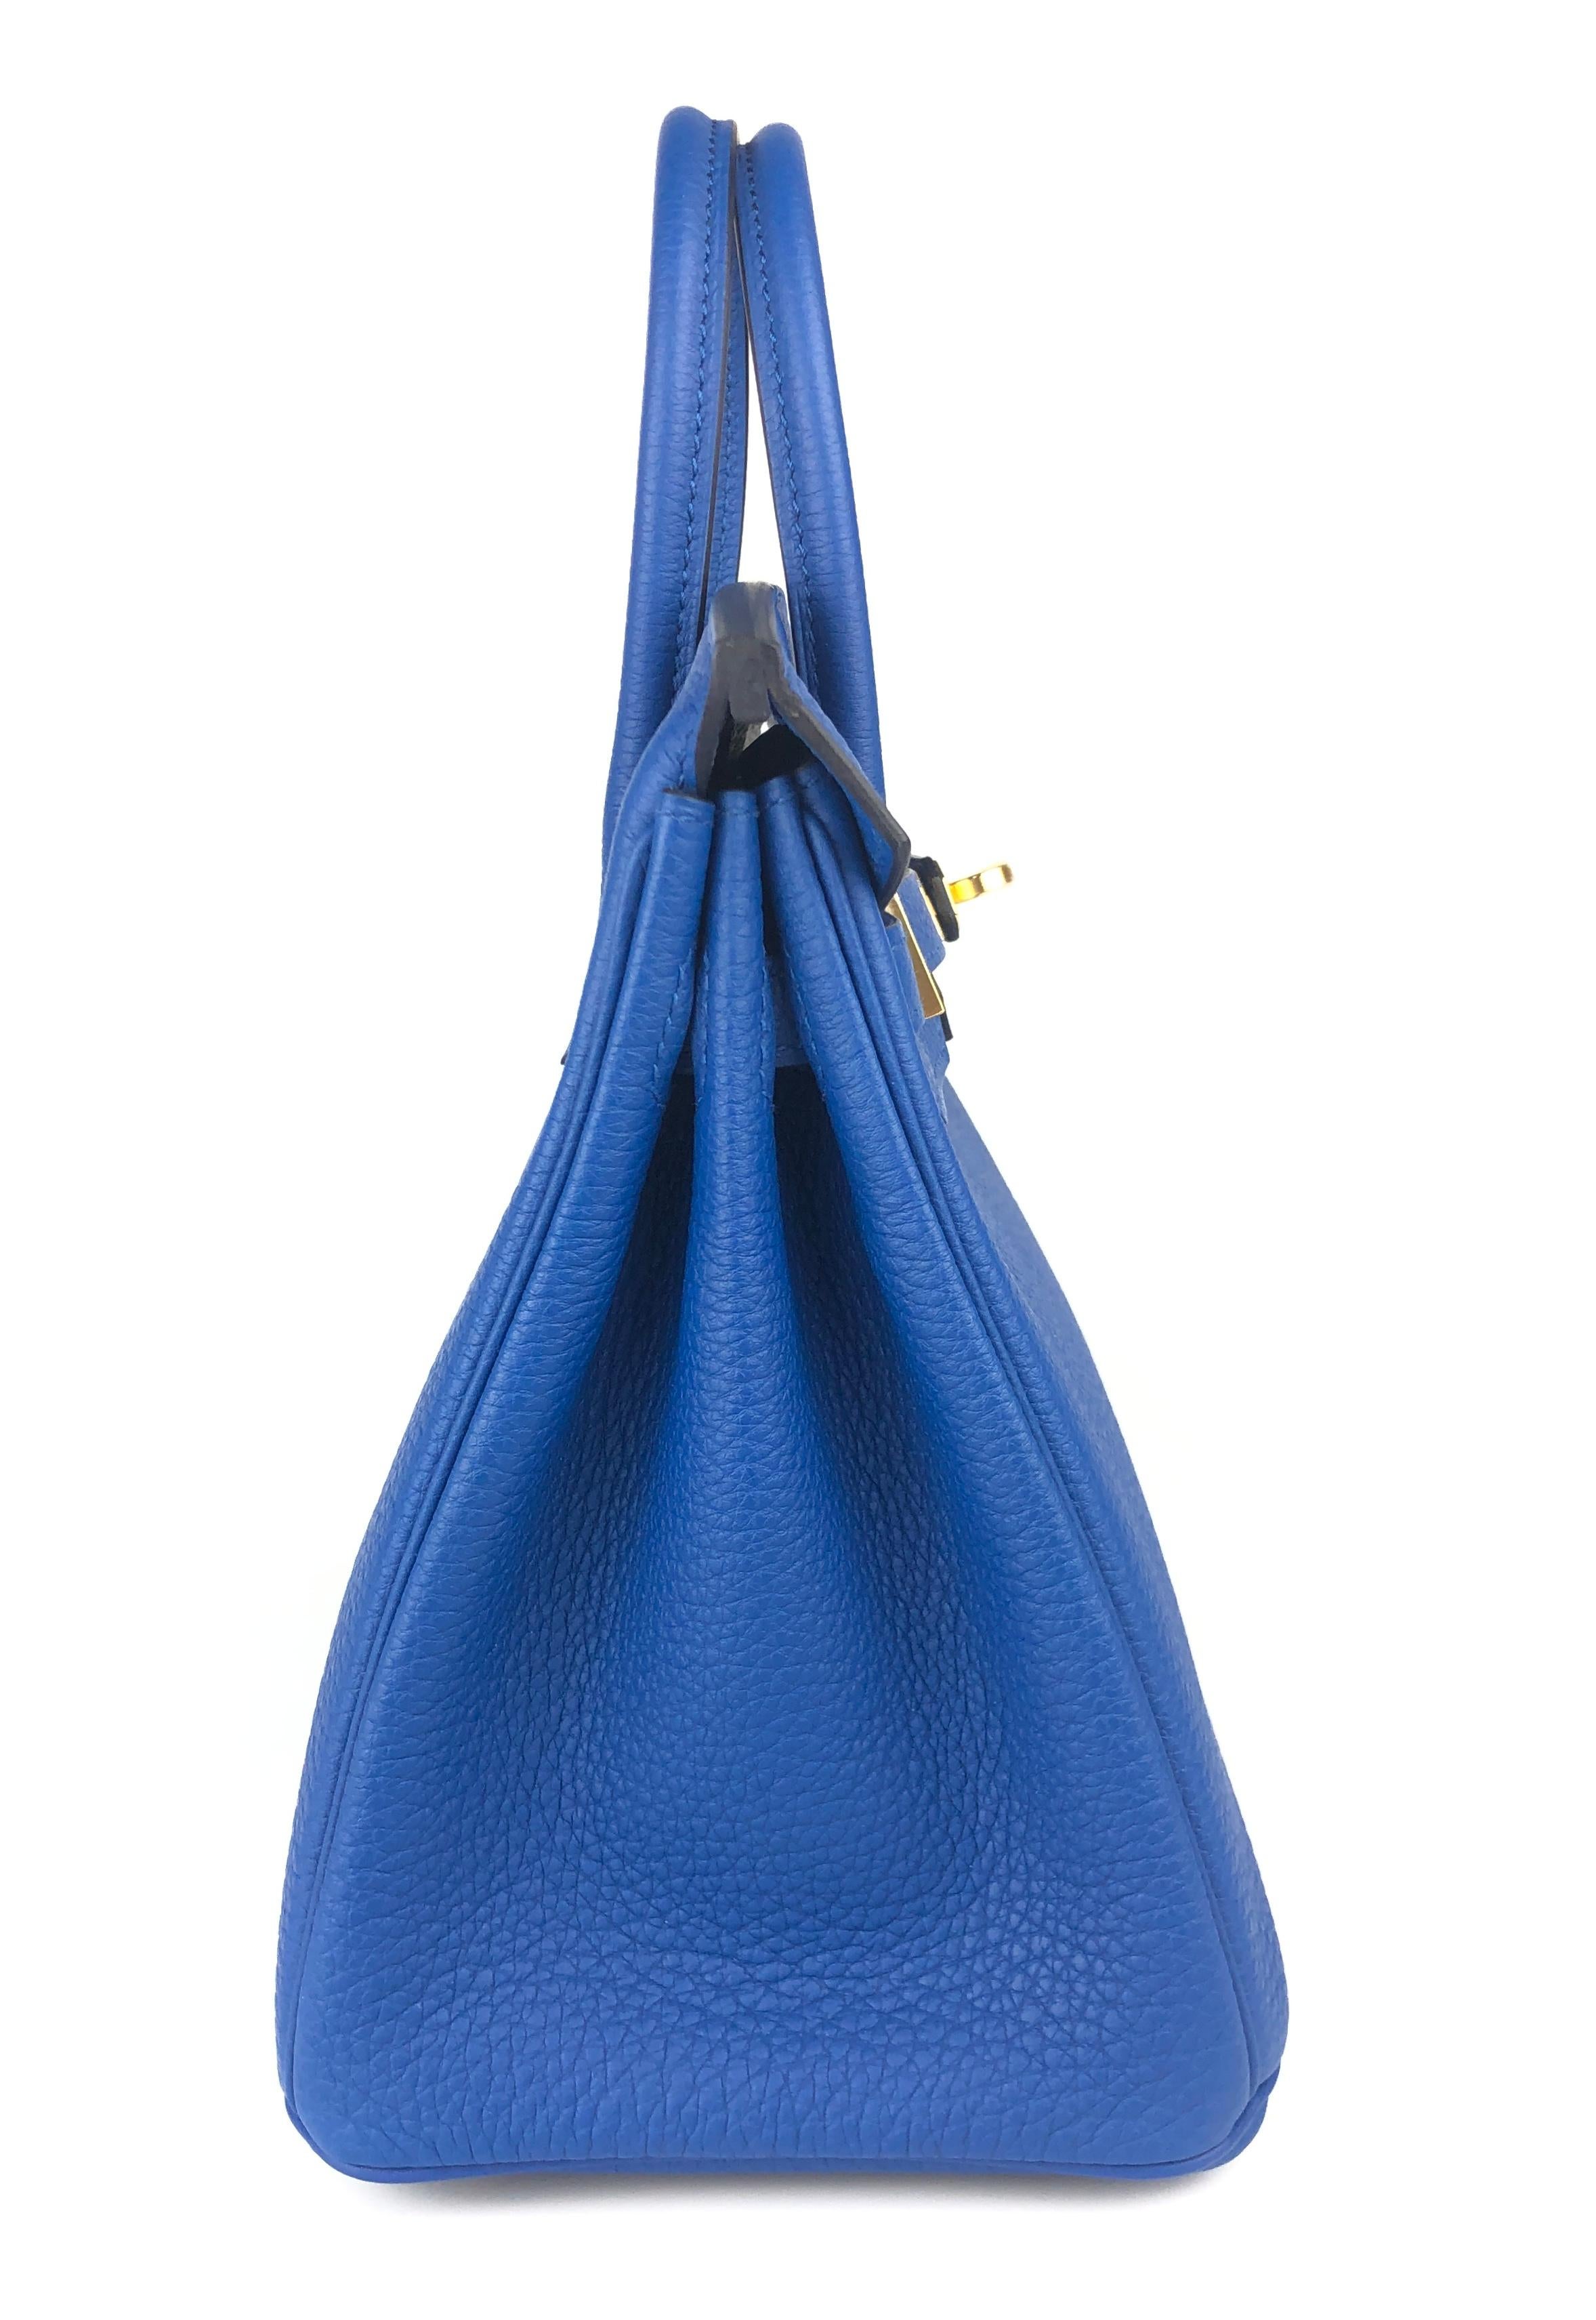 Hermes Birkin 25 Blue Bleu France Togo Leather Handbag Gold Hardware 2022 3